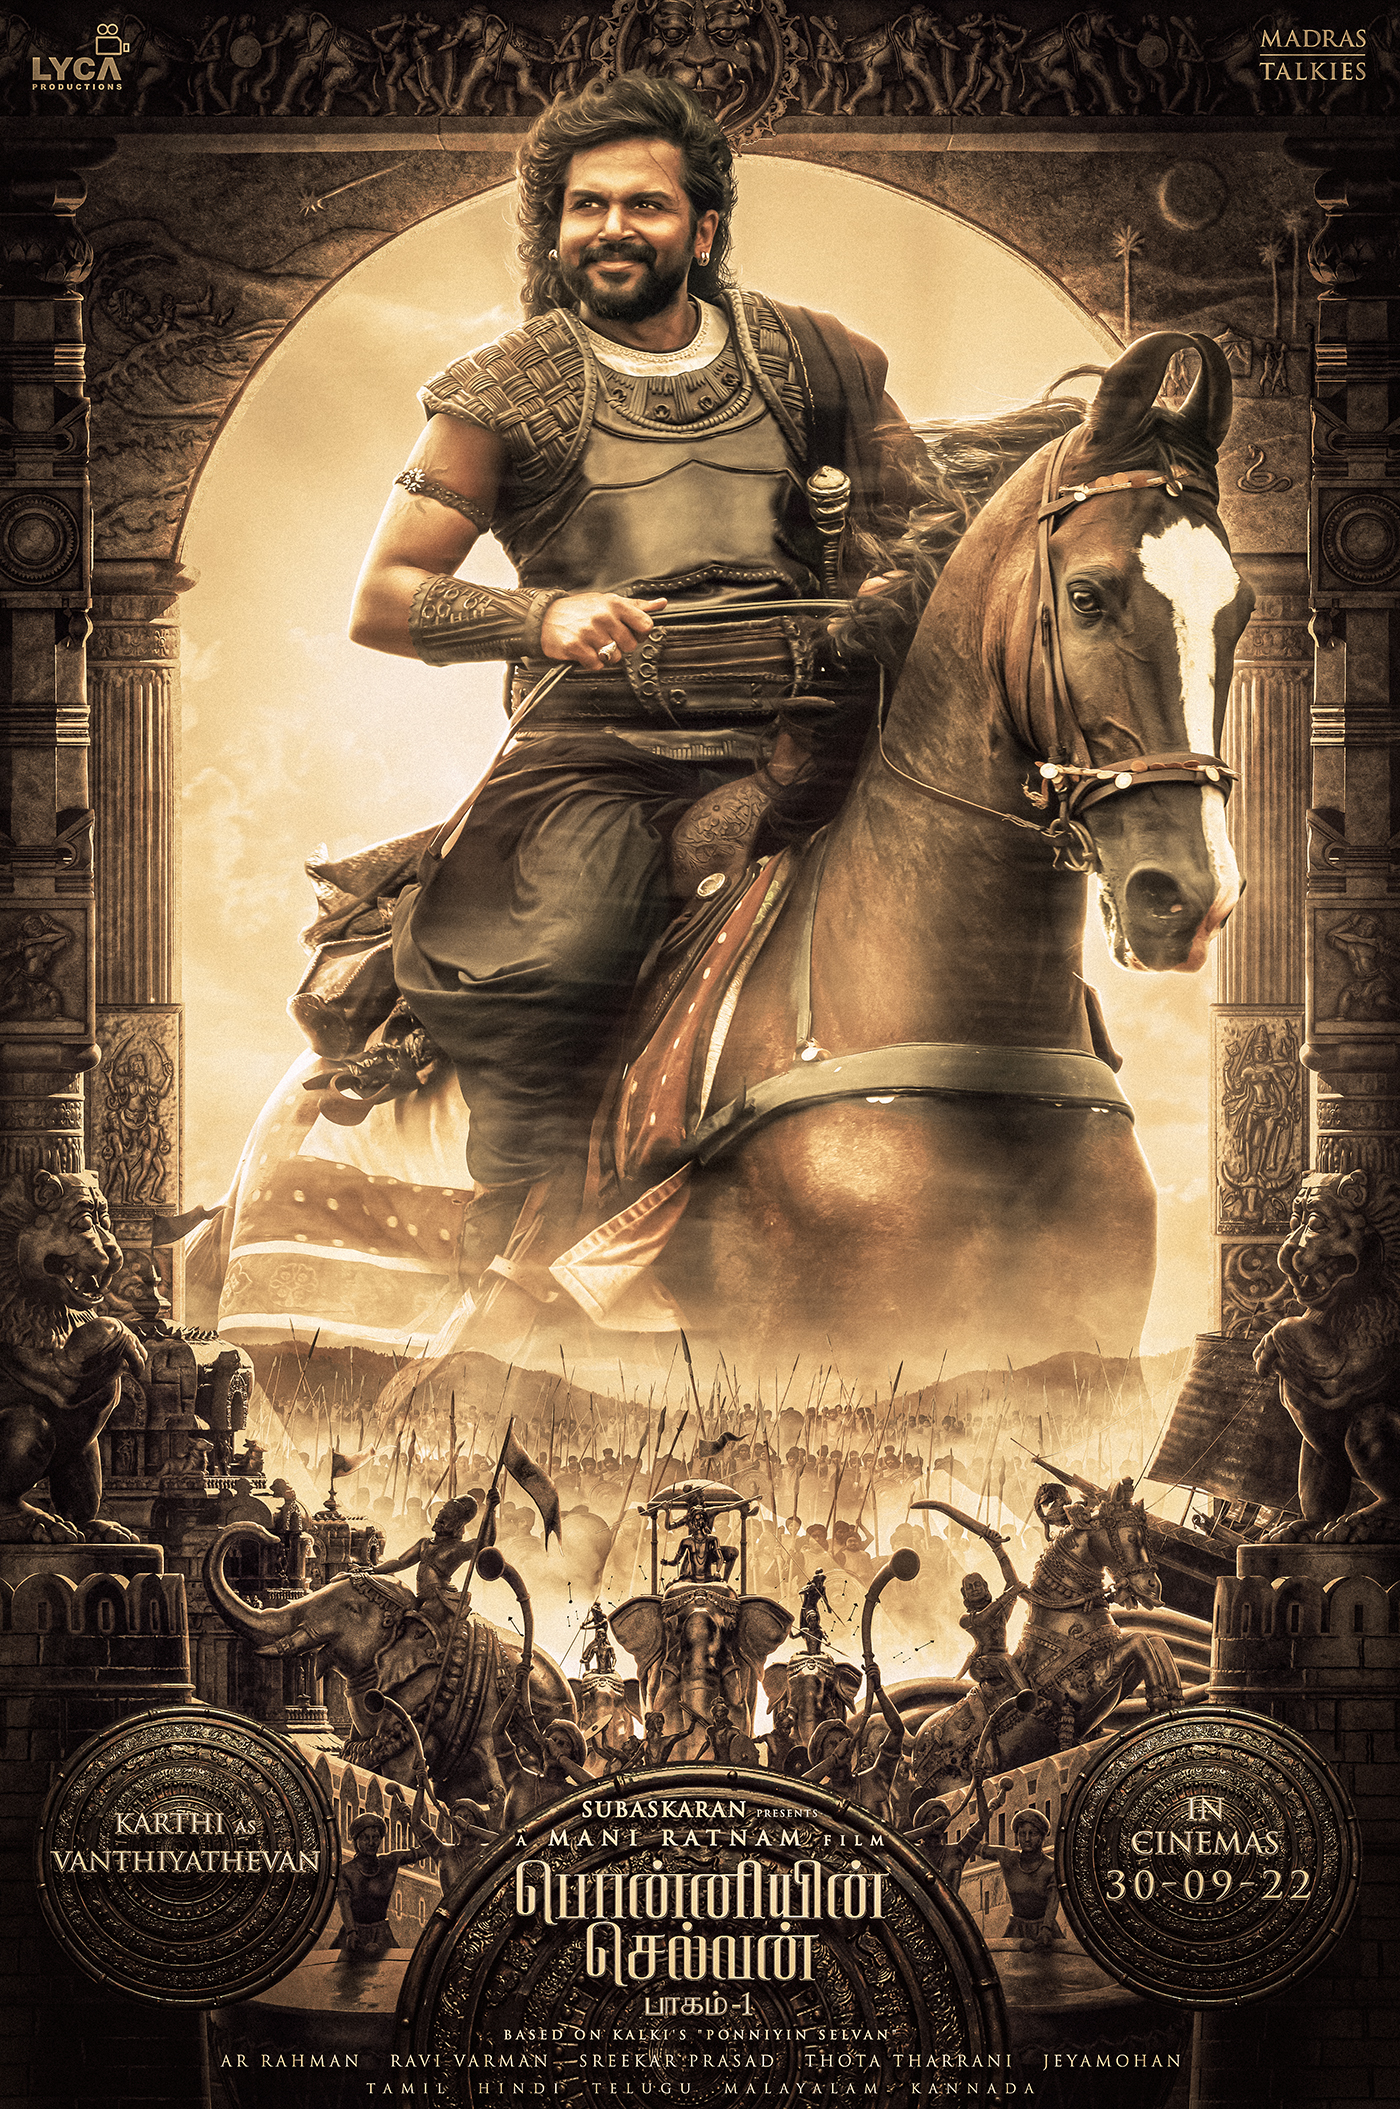 Ponniyin Selvan Movie Vanthiyathevan Karthi Character Look Poster